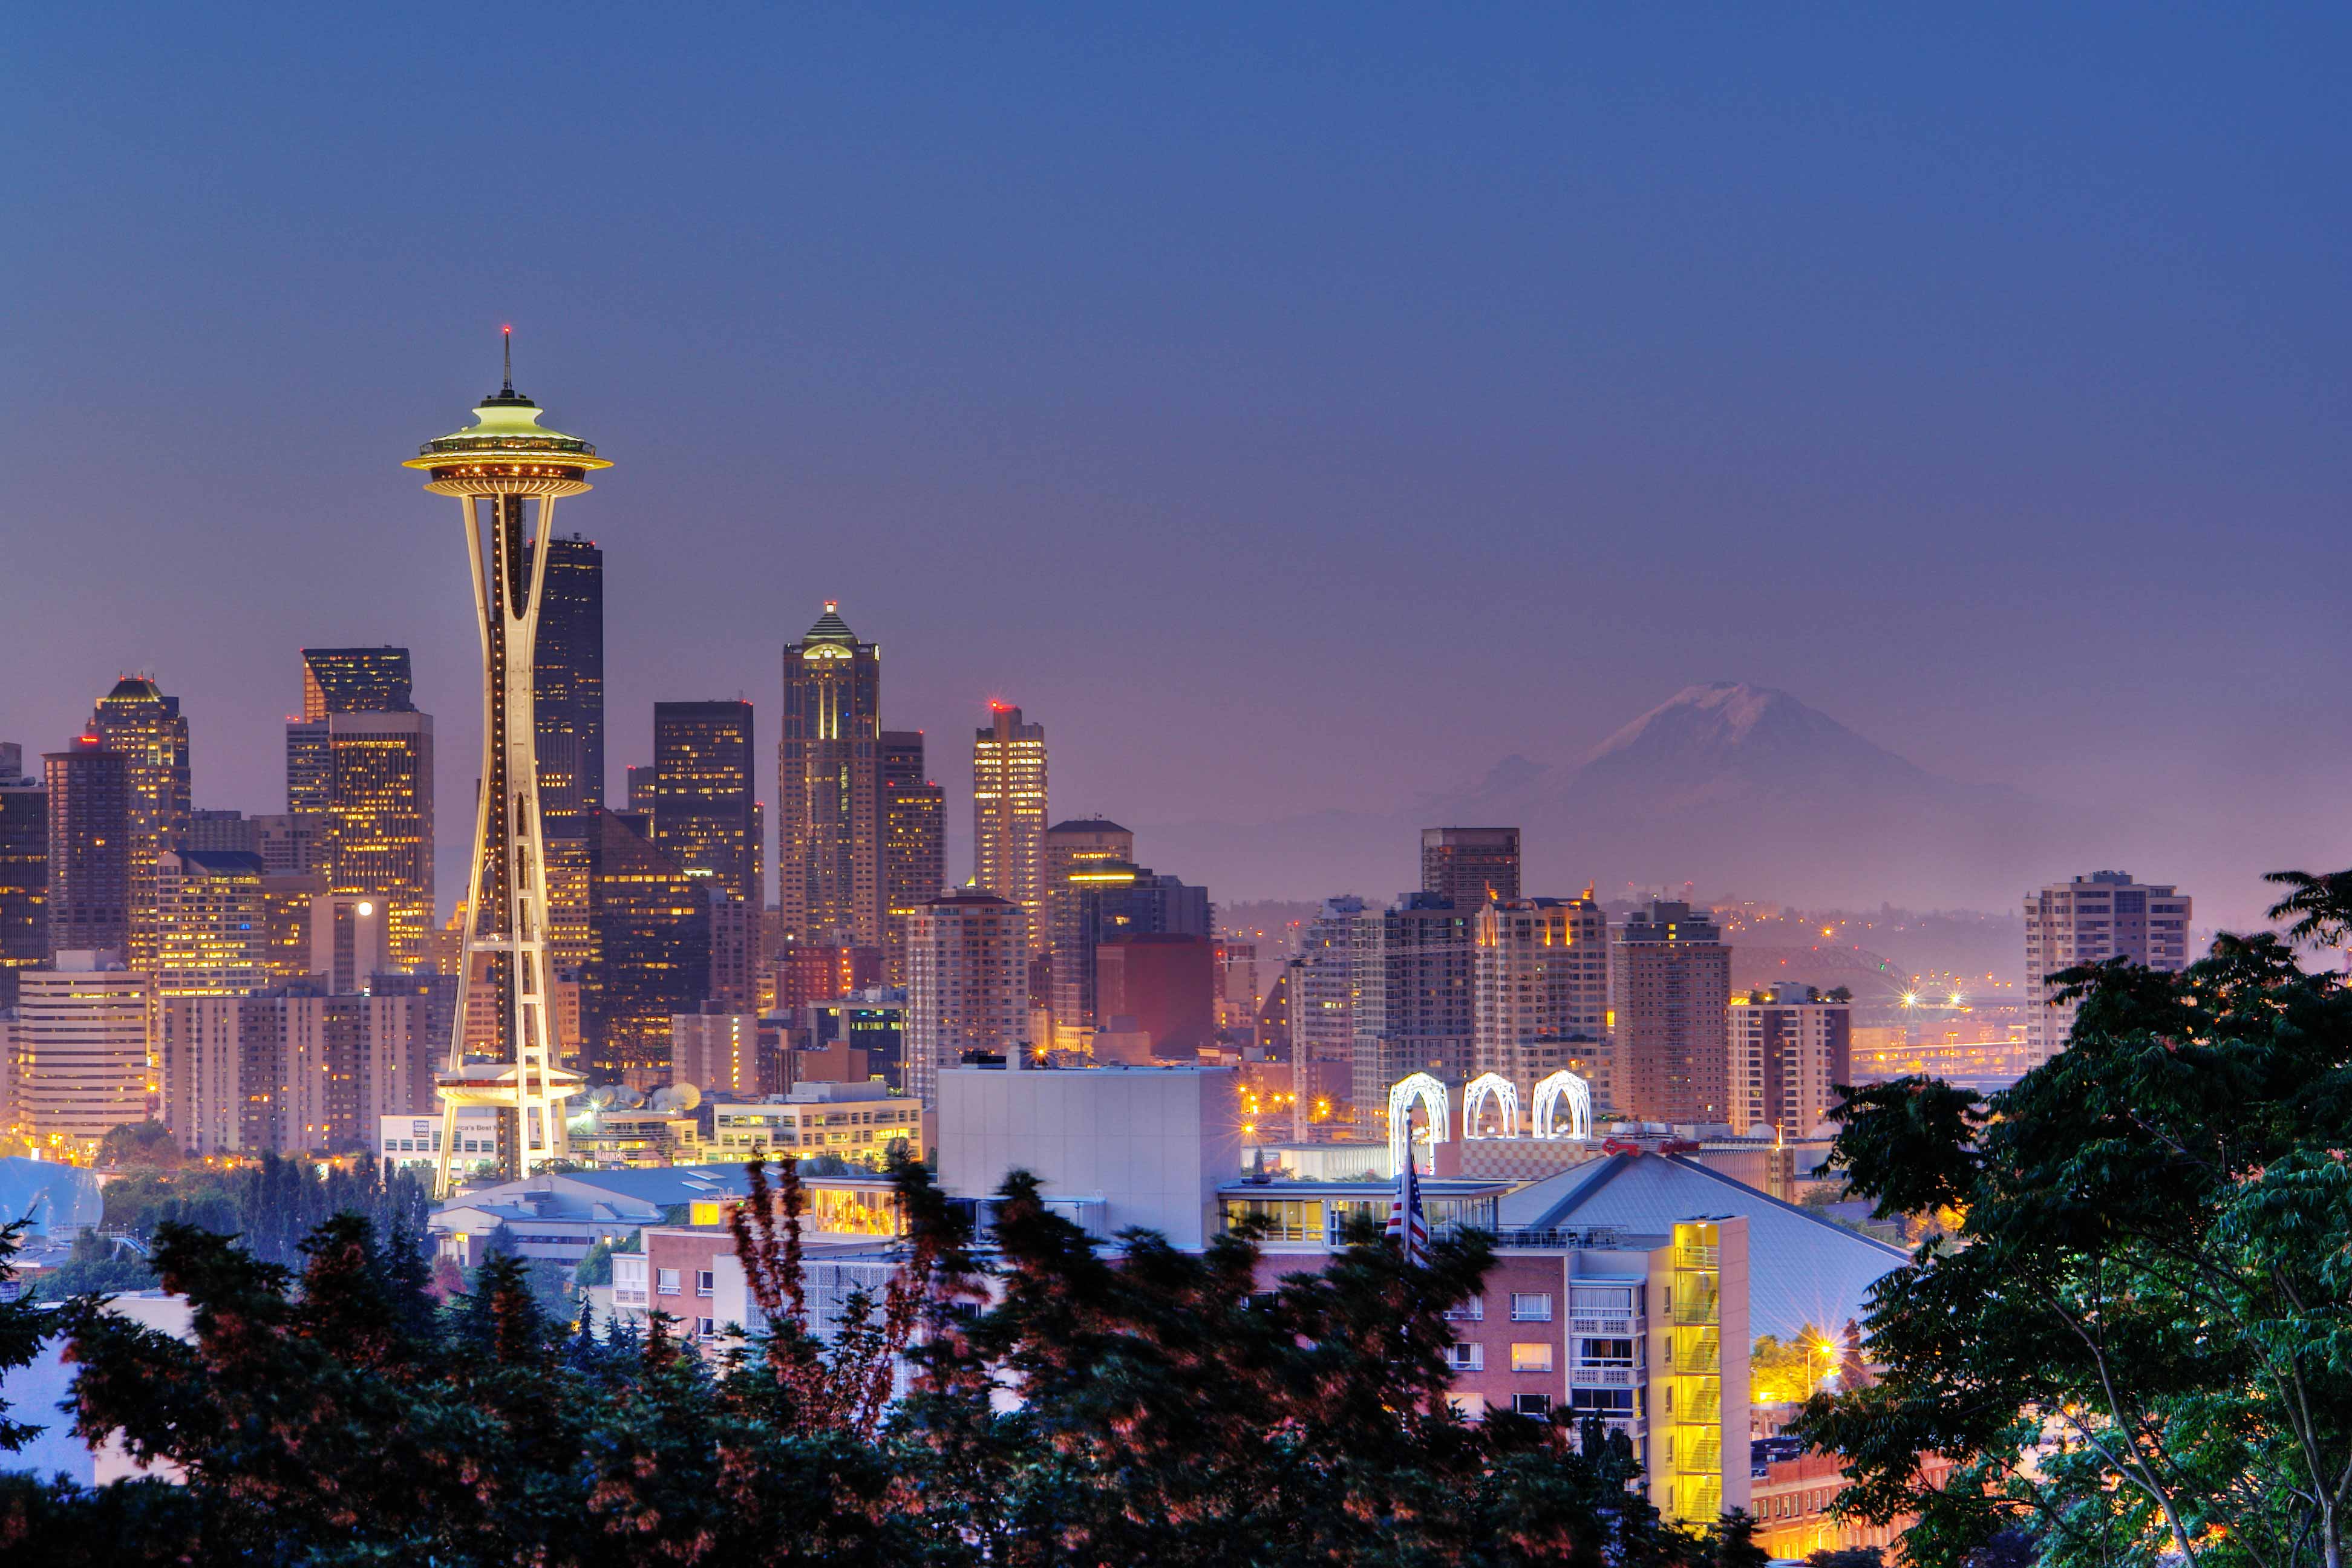 Seattle, Washington skyline at dusk